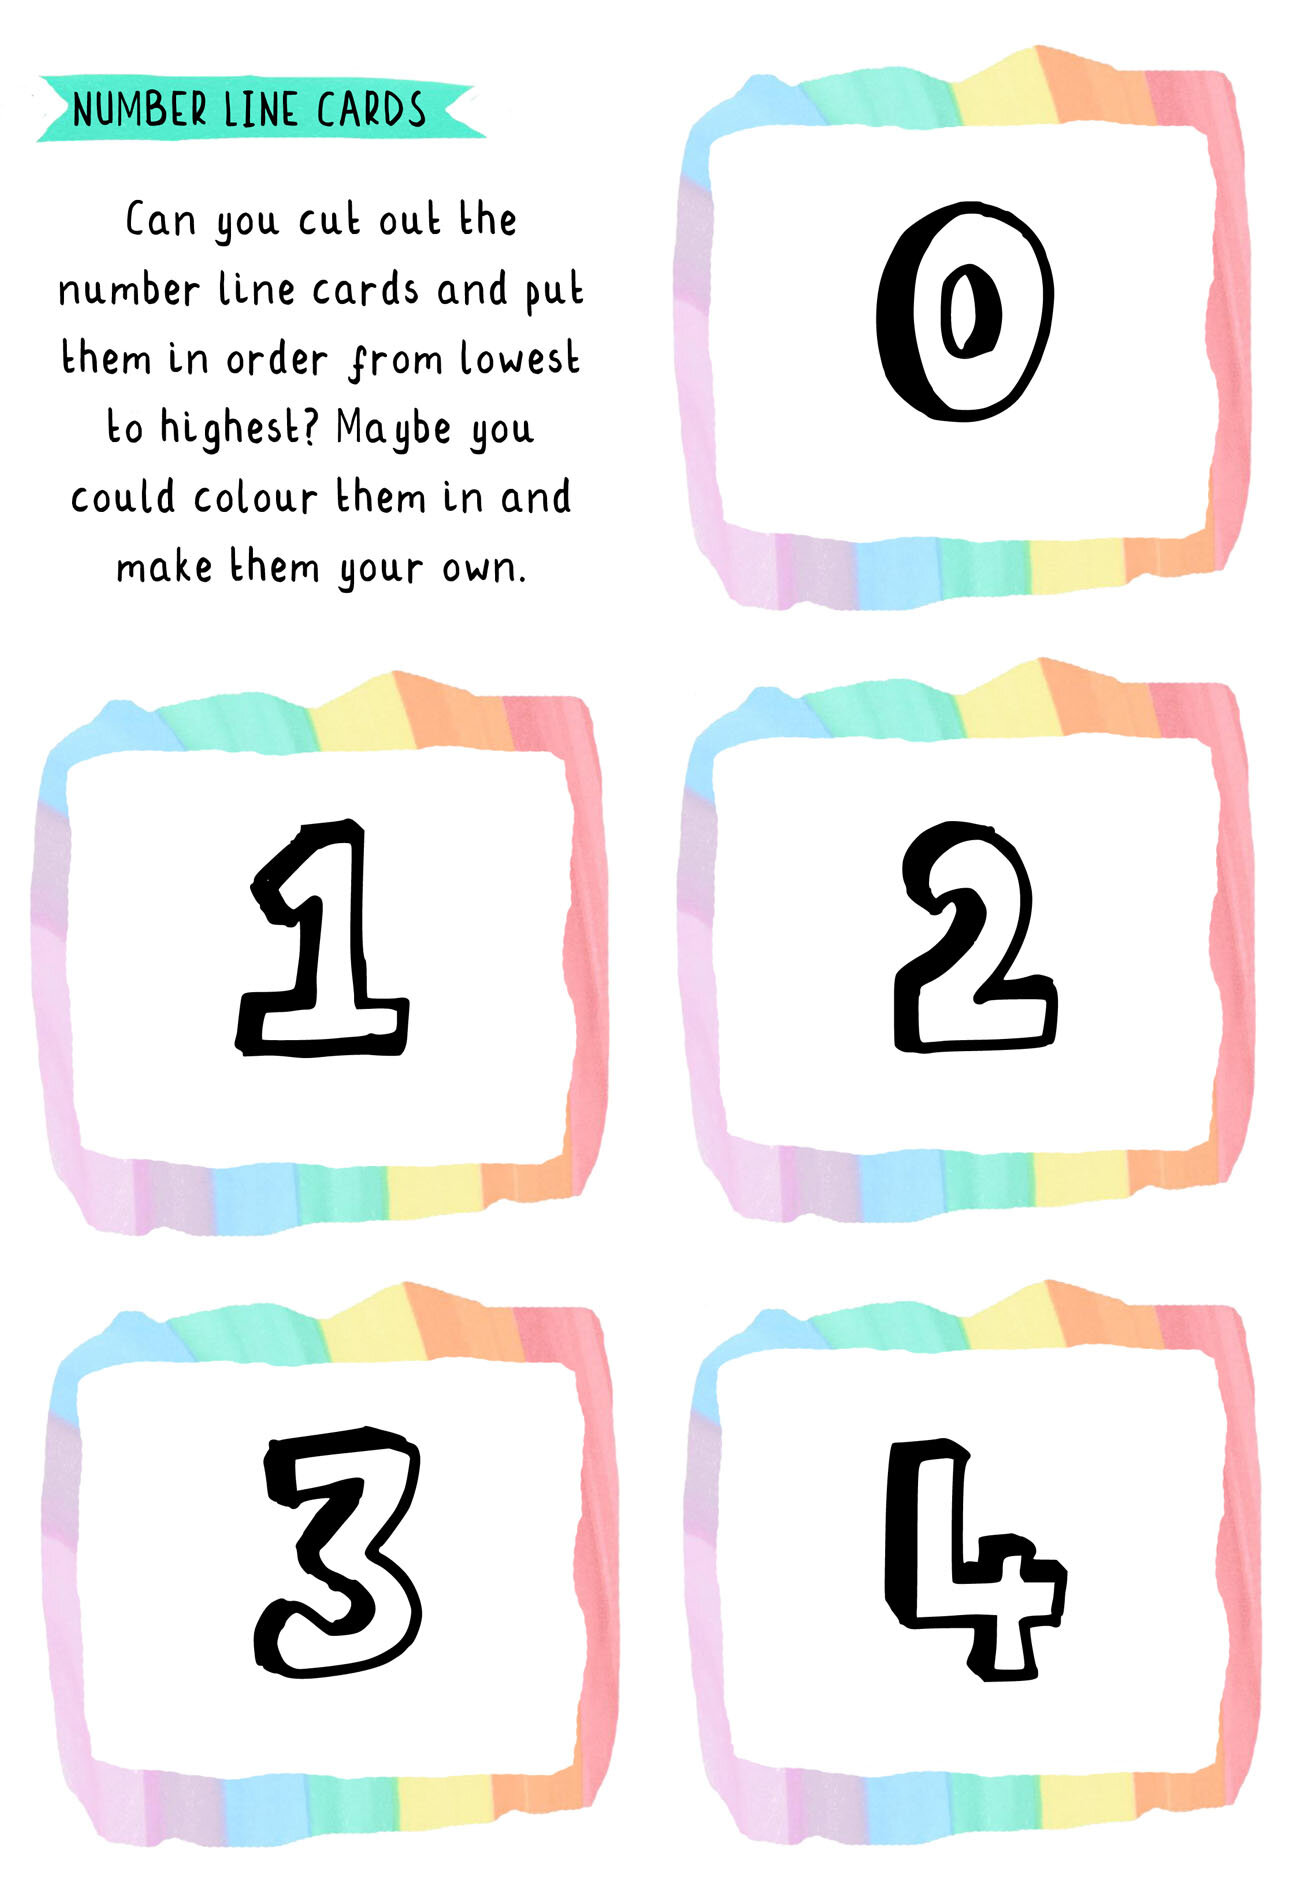 Number line cards